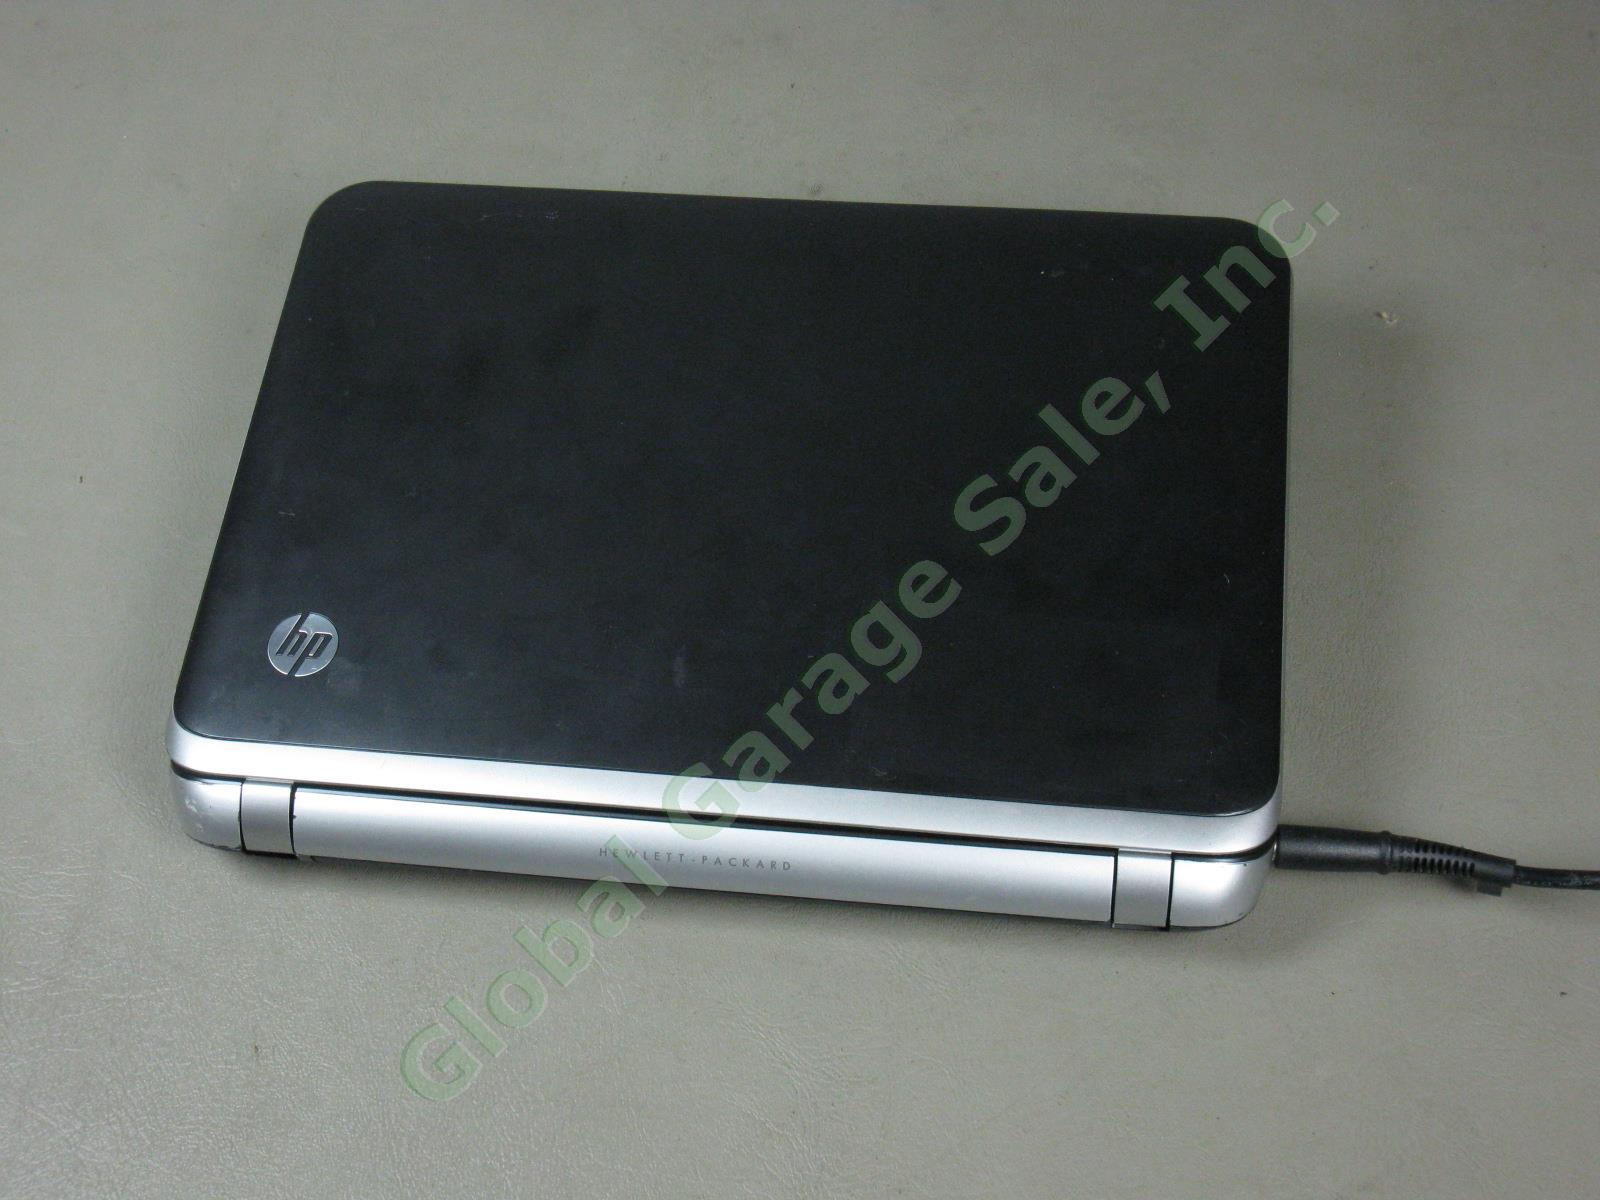 HP 3115m 11.6" Notebook Laptop AMD 1.65GHz 4GB 320GB Windows 7 Ultim Beats Audio 3